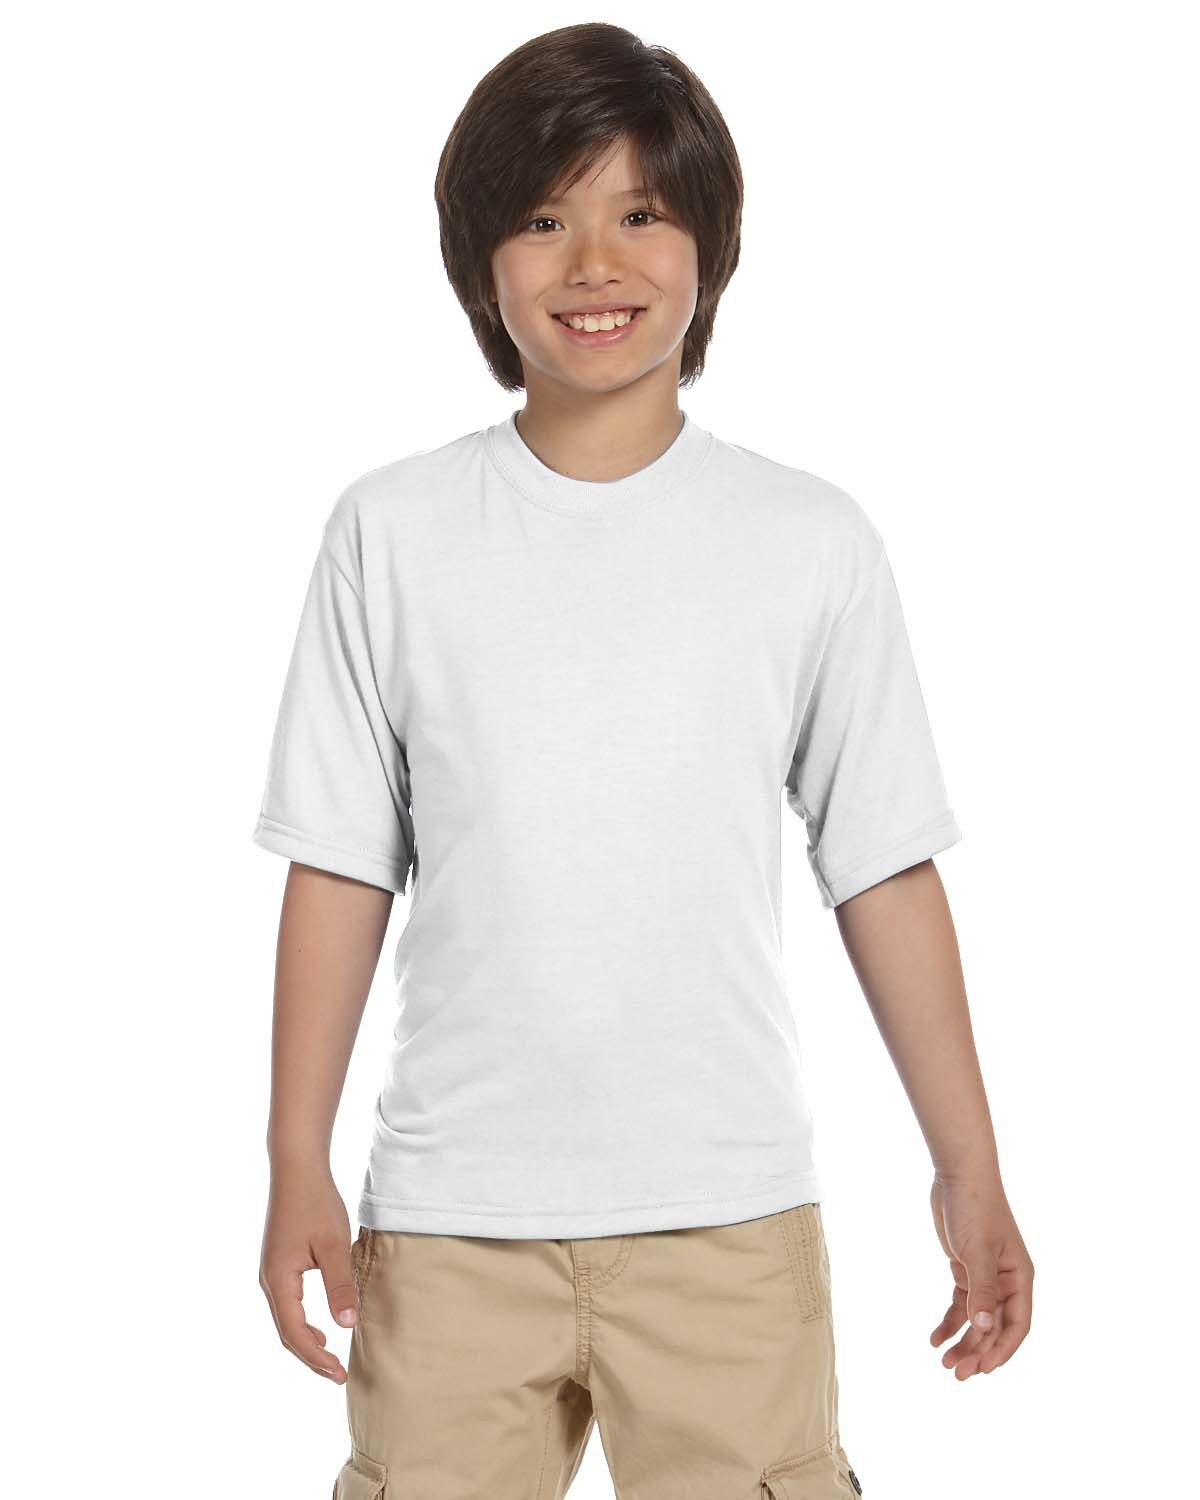 Youth Sublimation Shirts